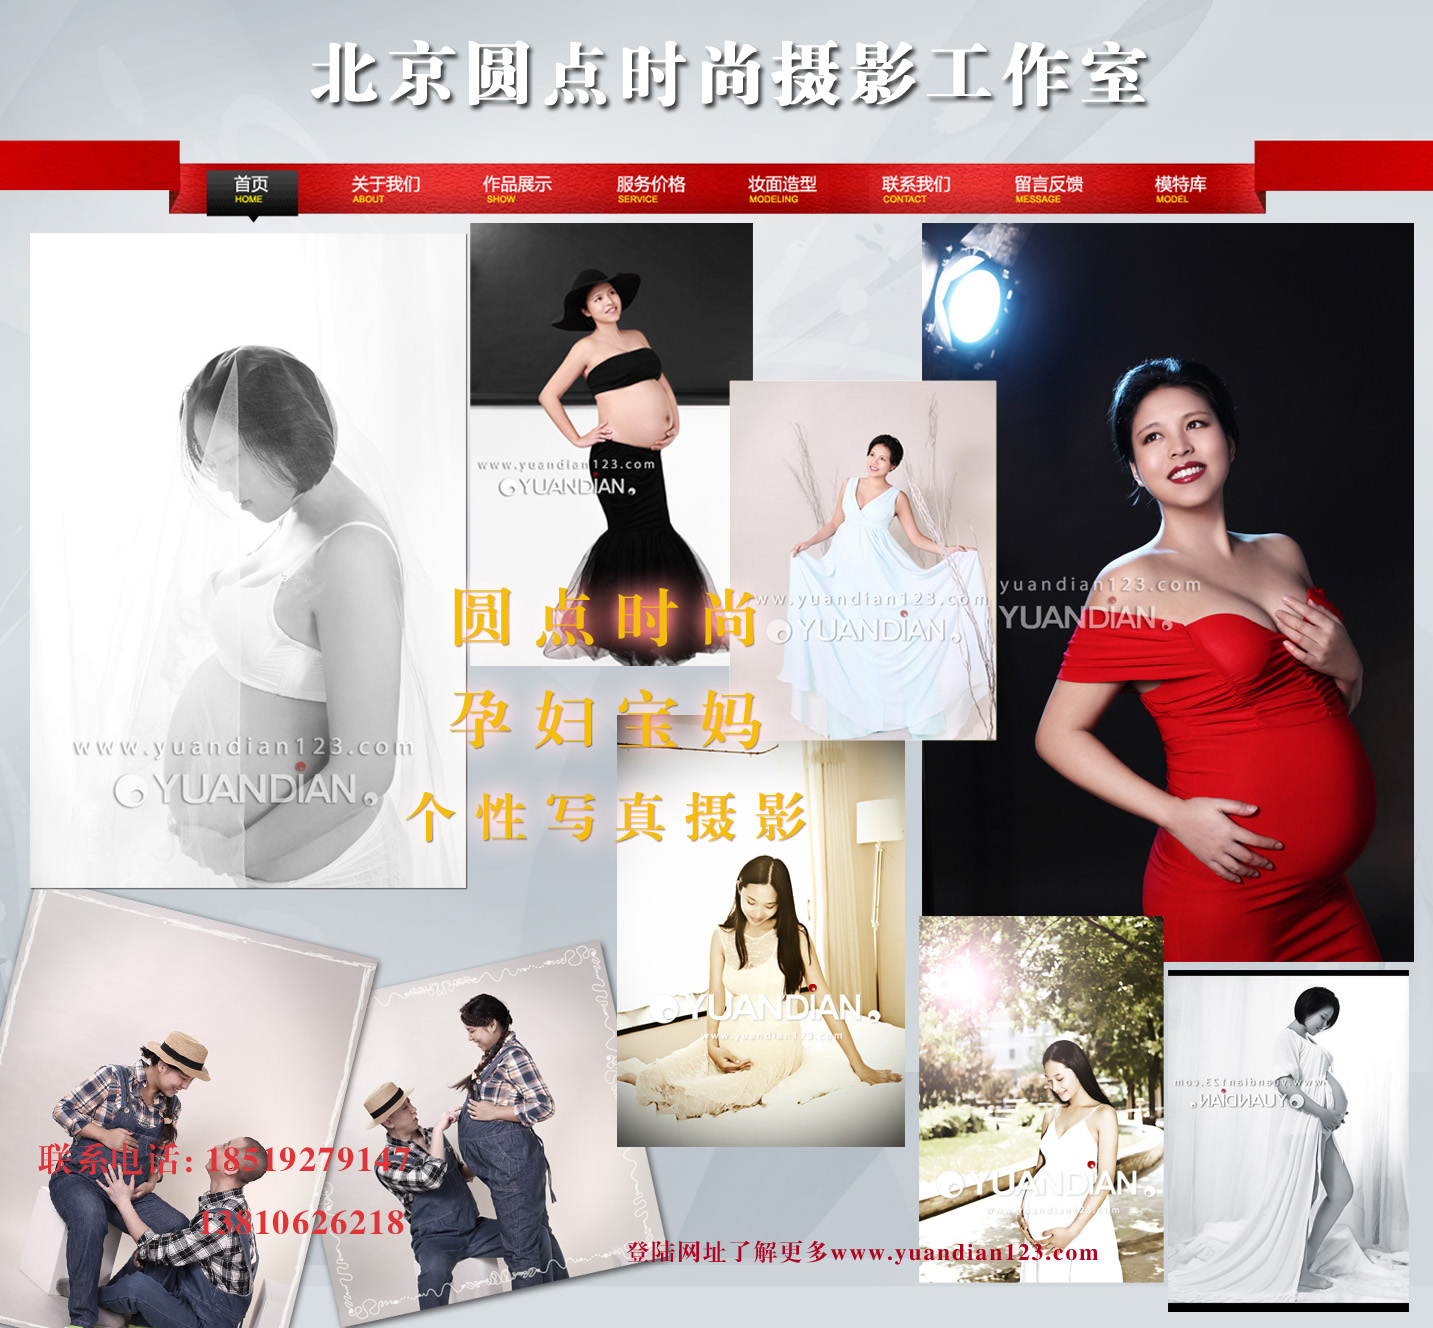 孕妇生活写真拍摄 北京孕妇写真拍摄 摄影服务 孕妇生活照拍摄